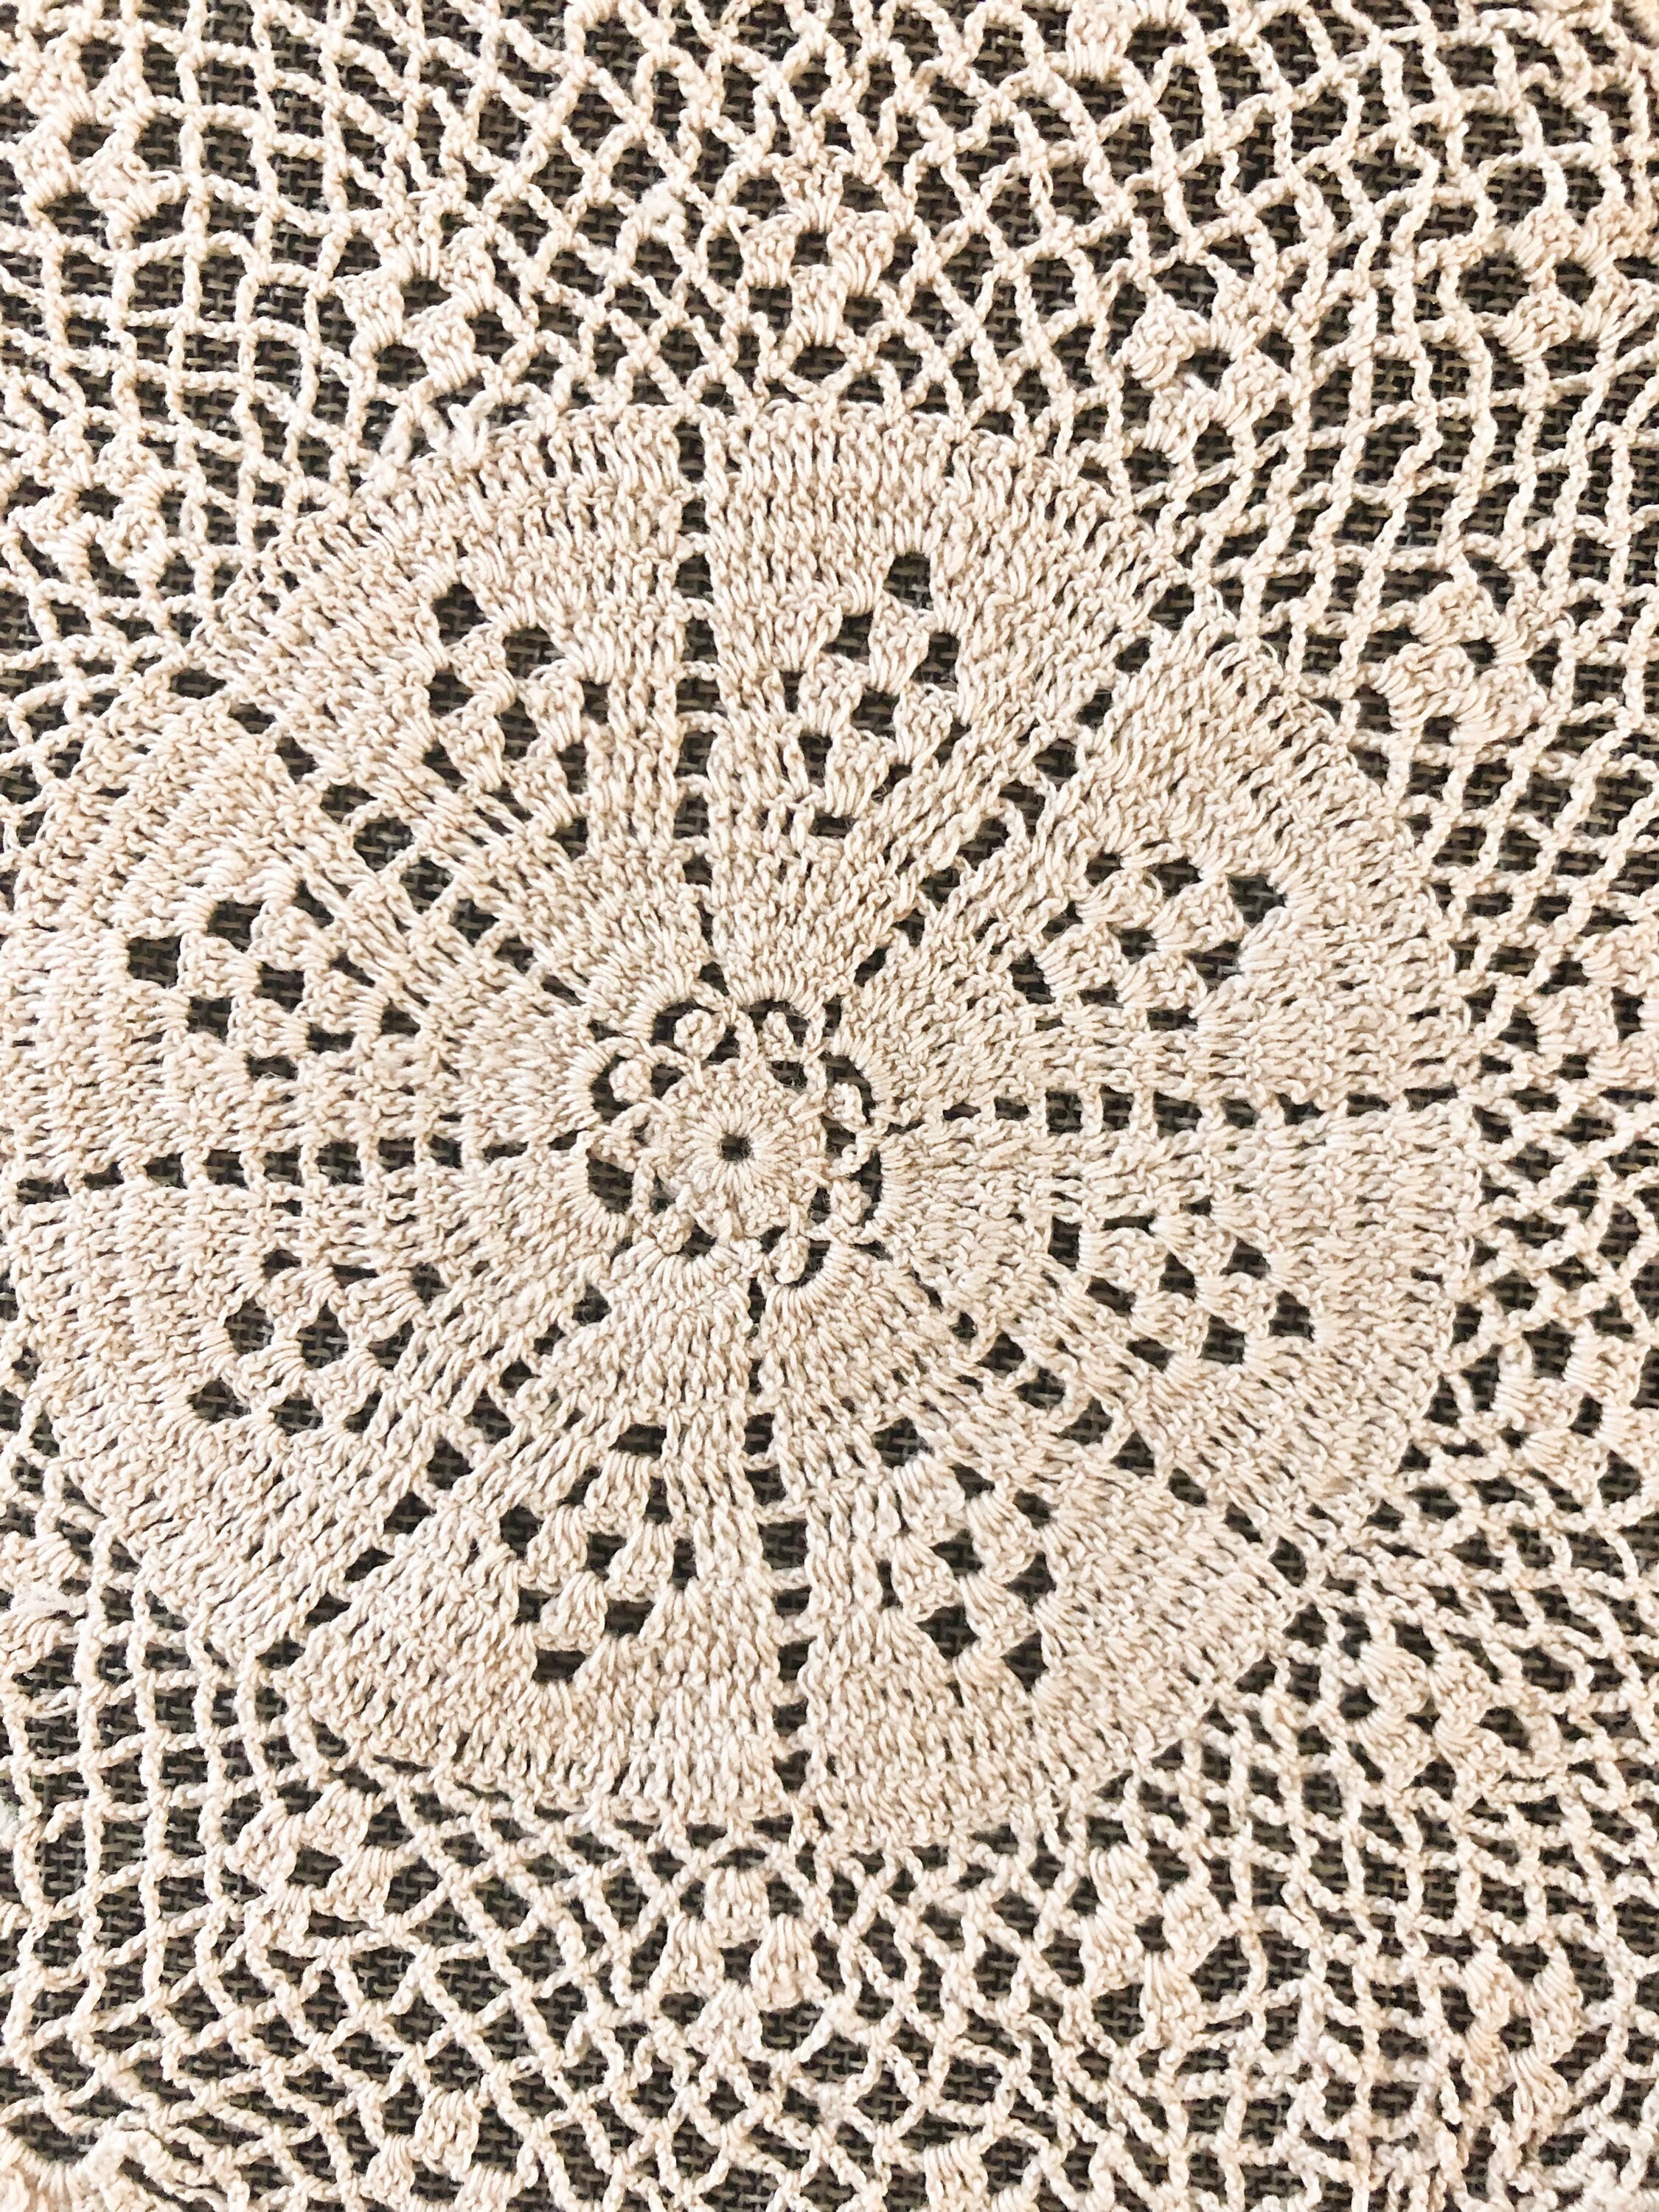 Vintage Crochet Doily fine ecru vintage fan pattern doily